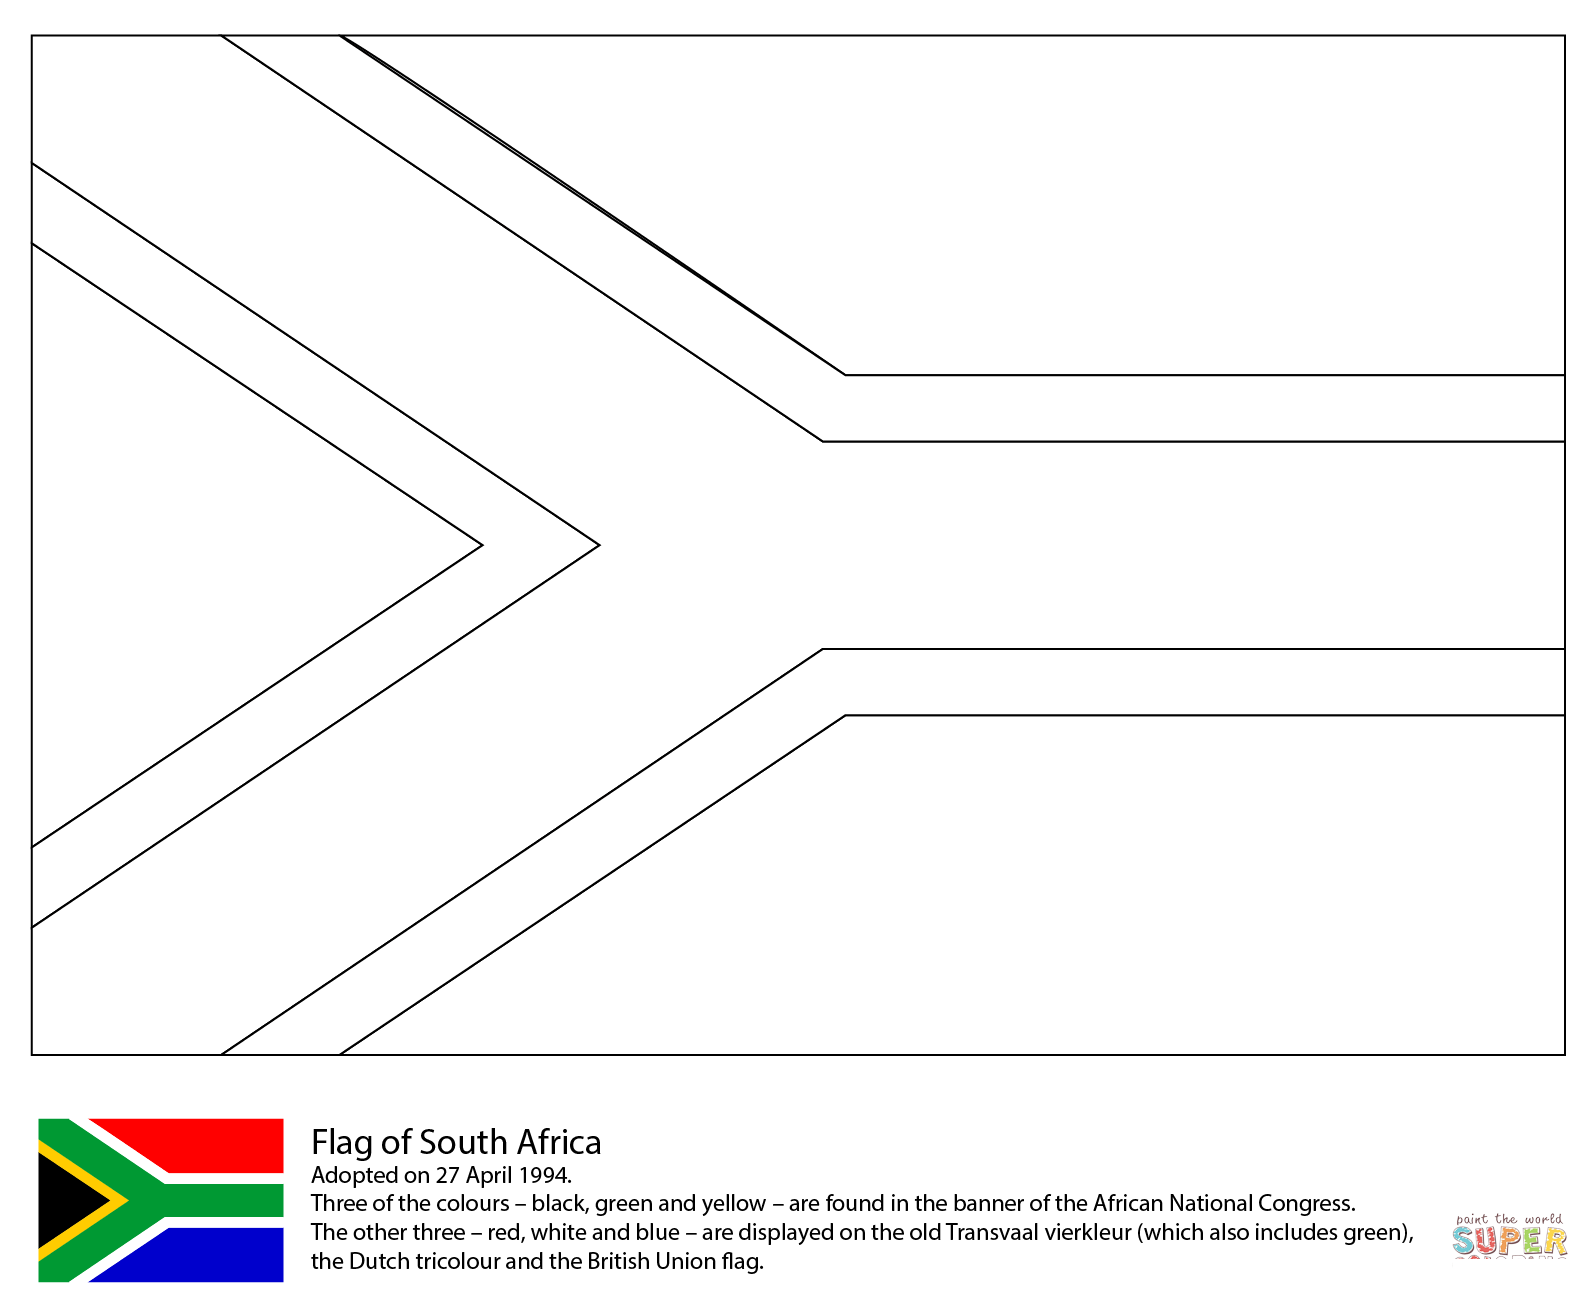 ธงชาติแอฟริกาใต้